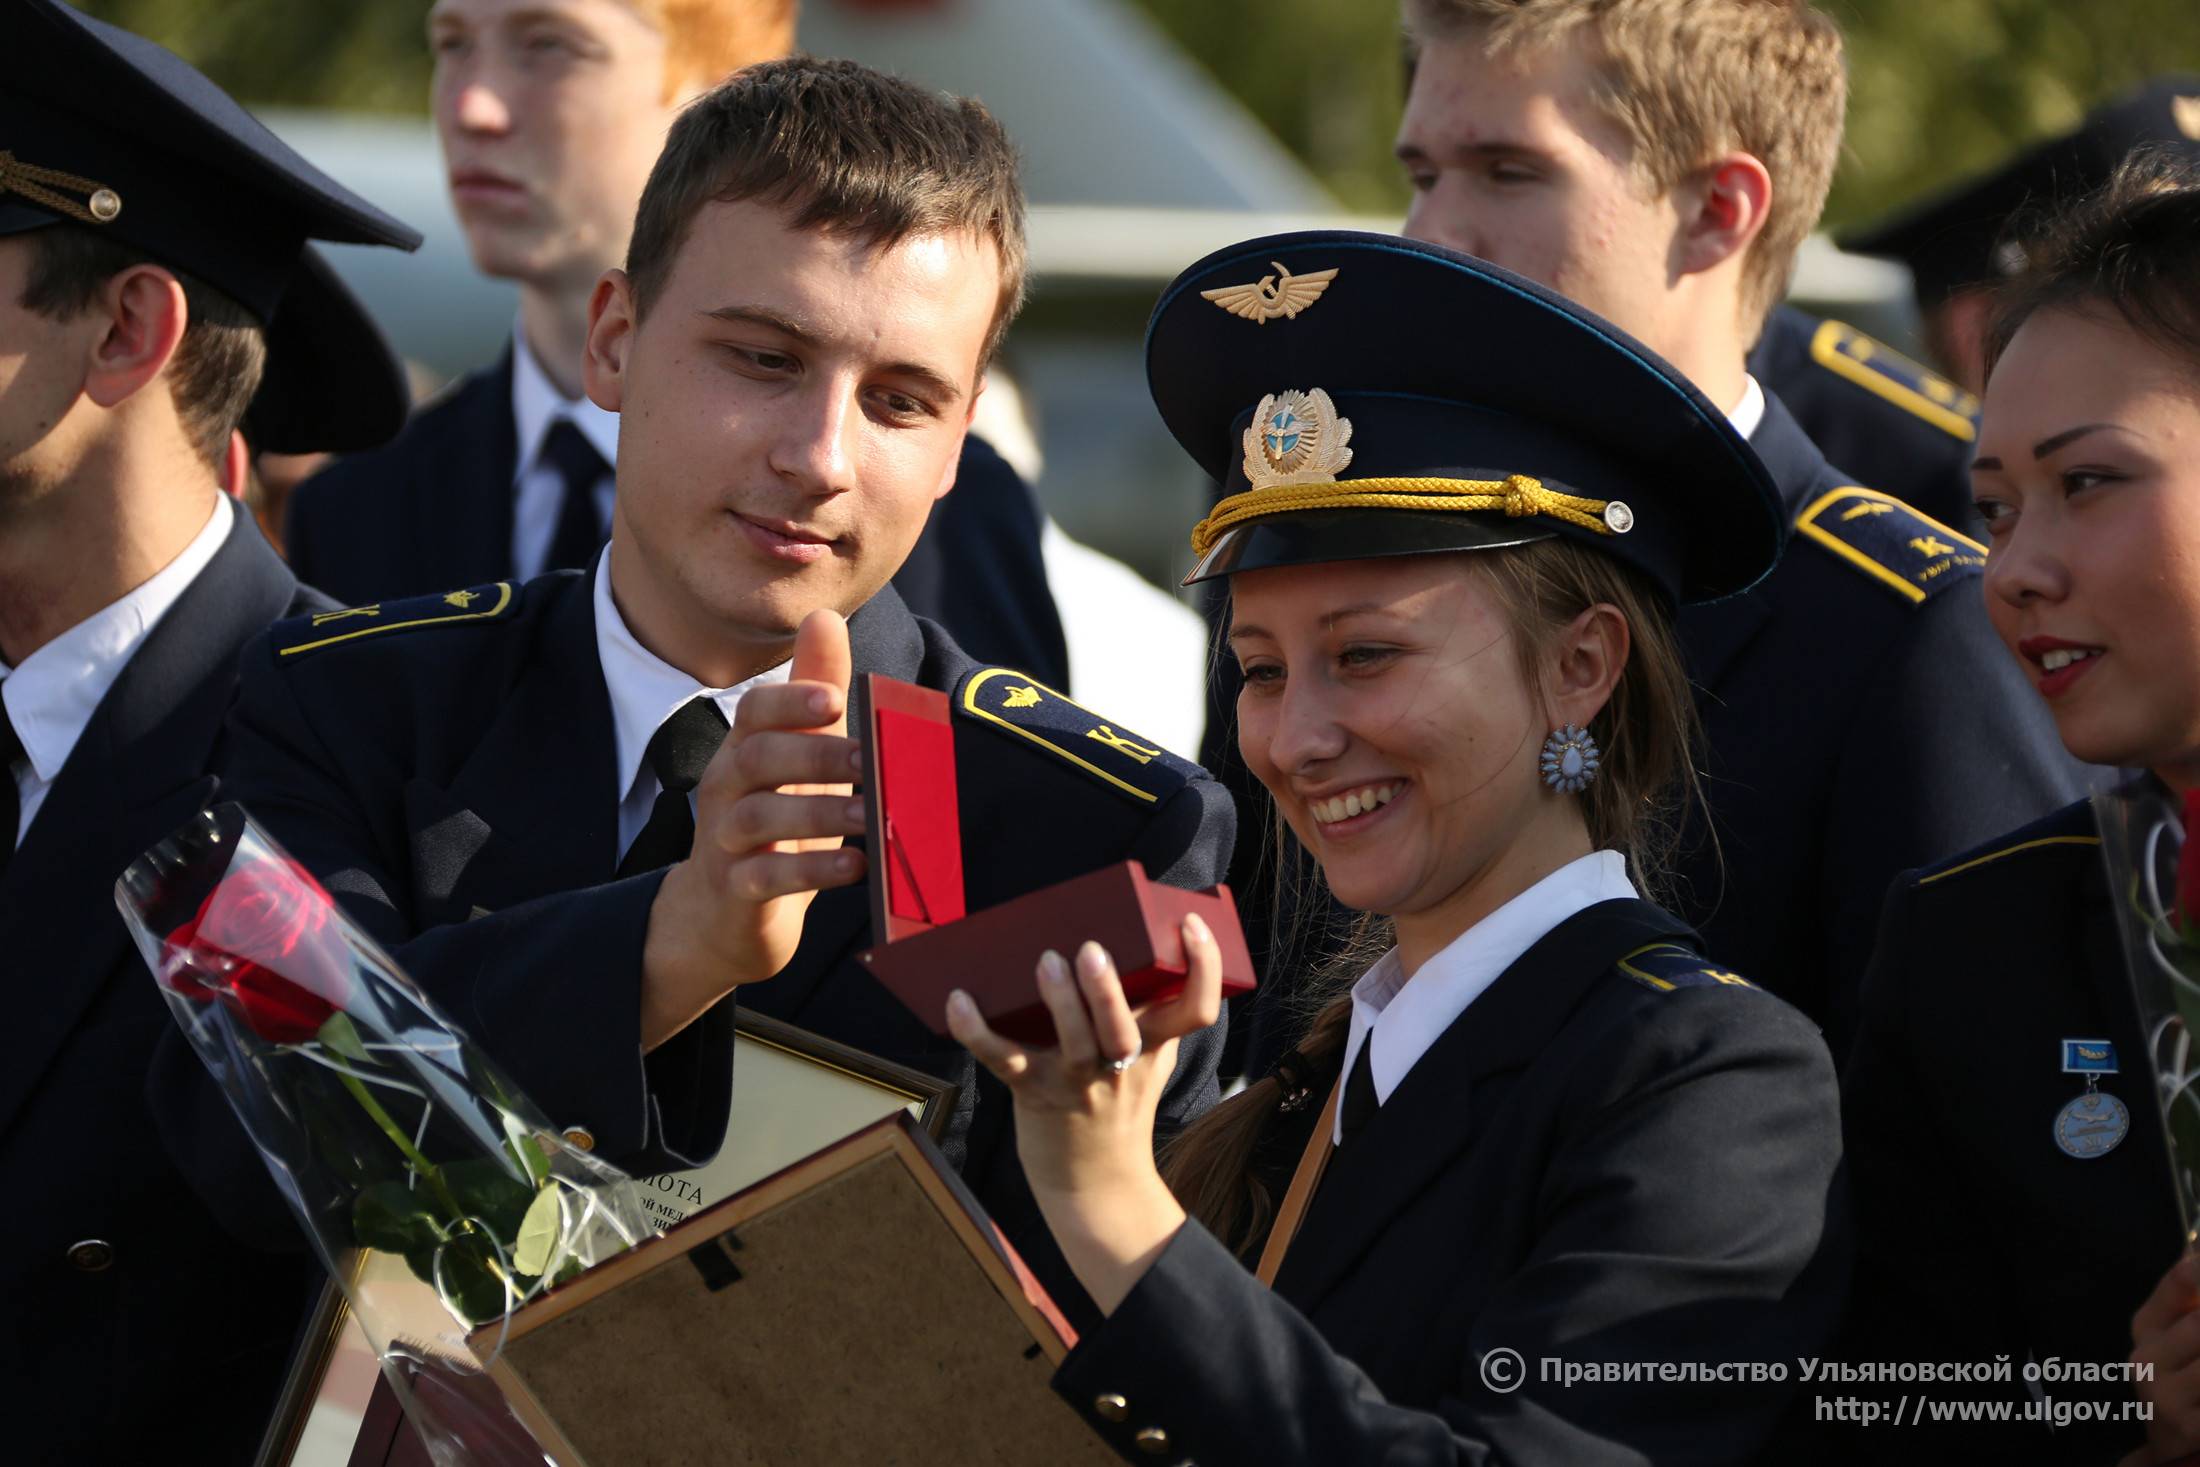 Ульяновский институт гражданской авиации - вики